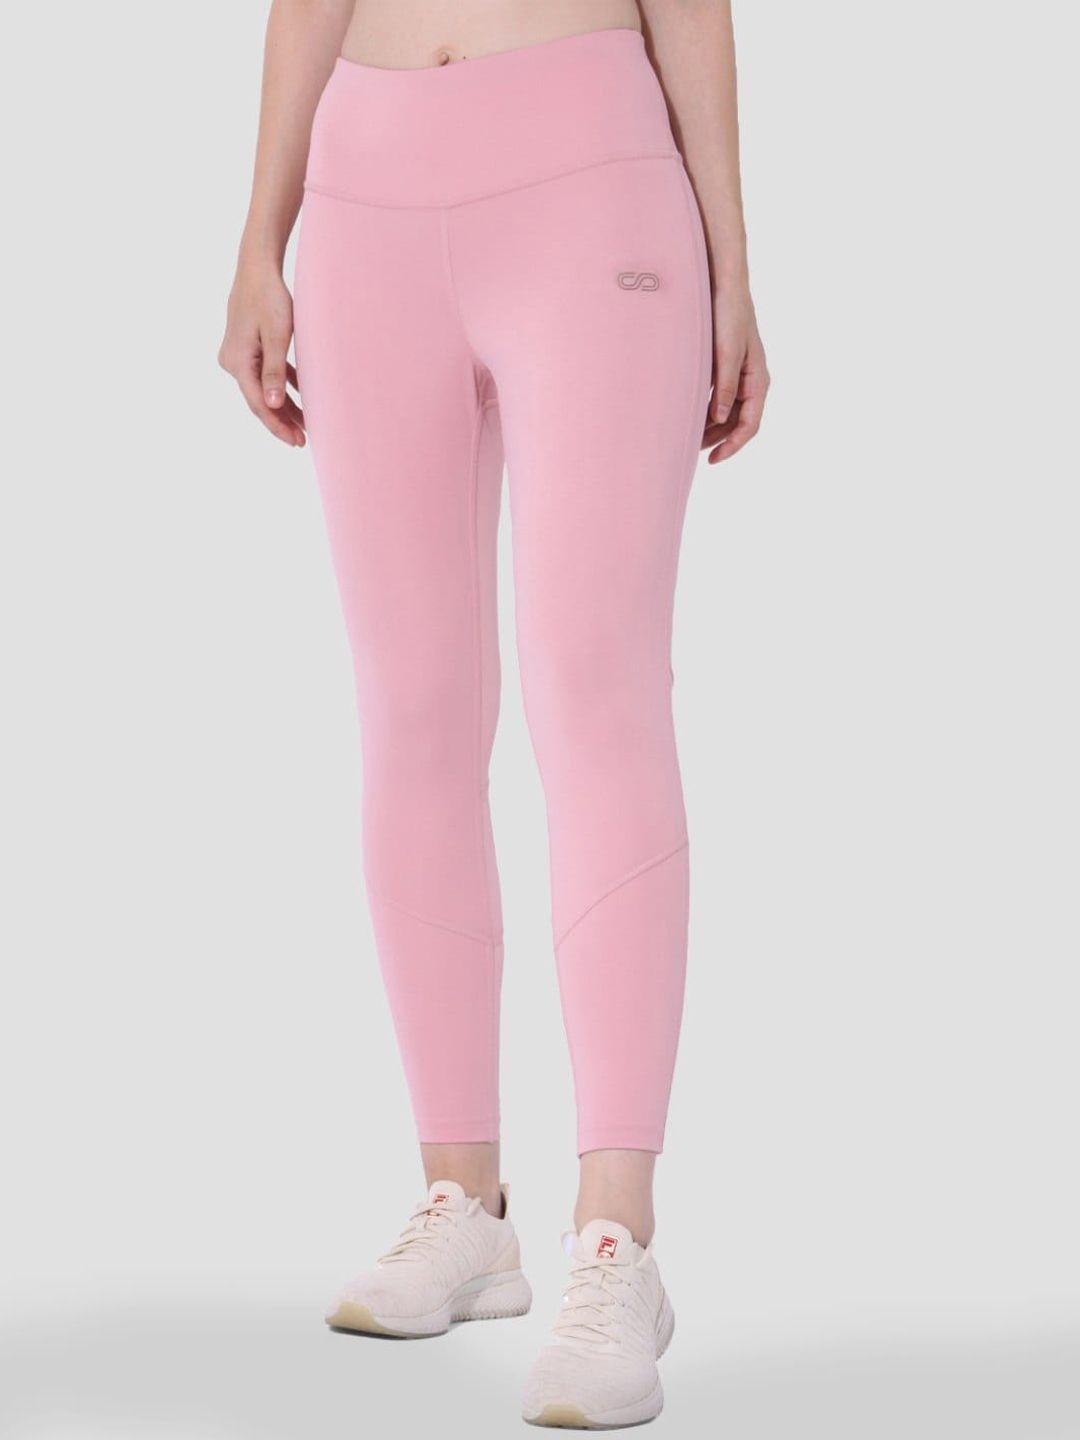 silvertraq women pink solid tights